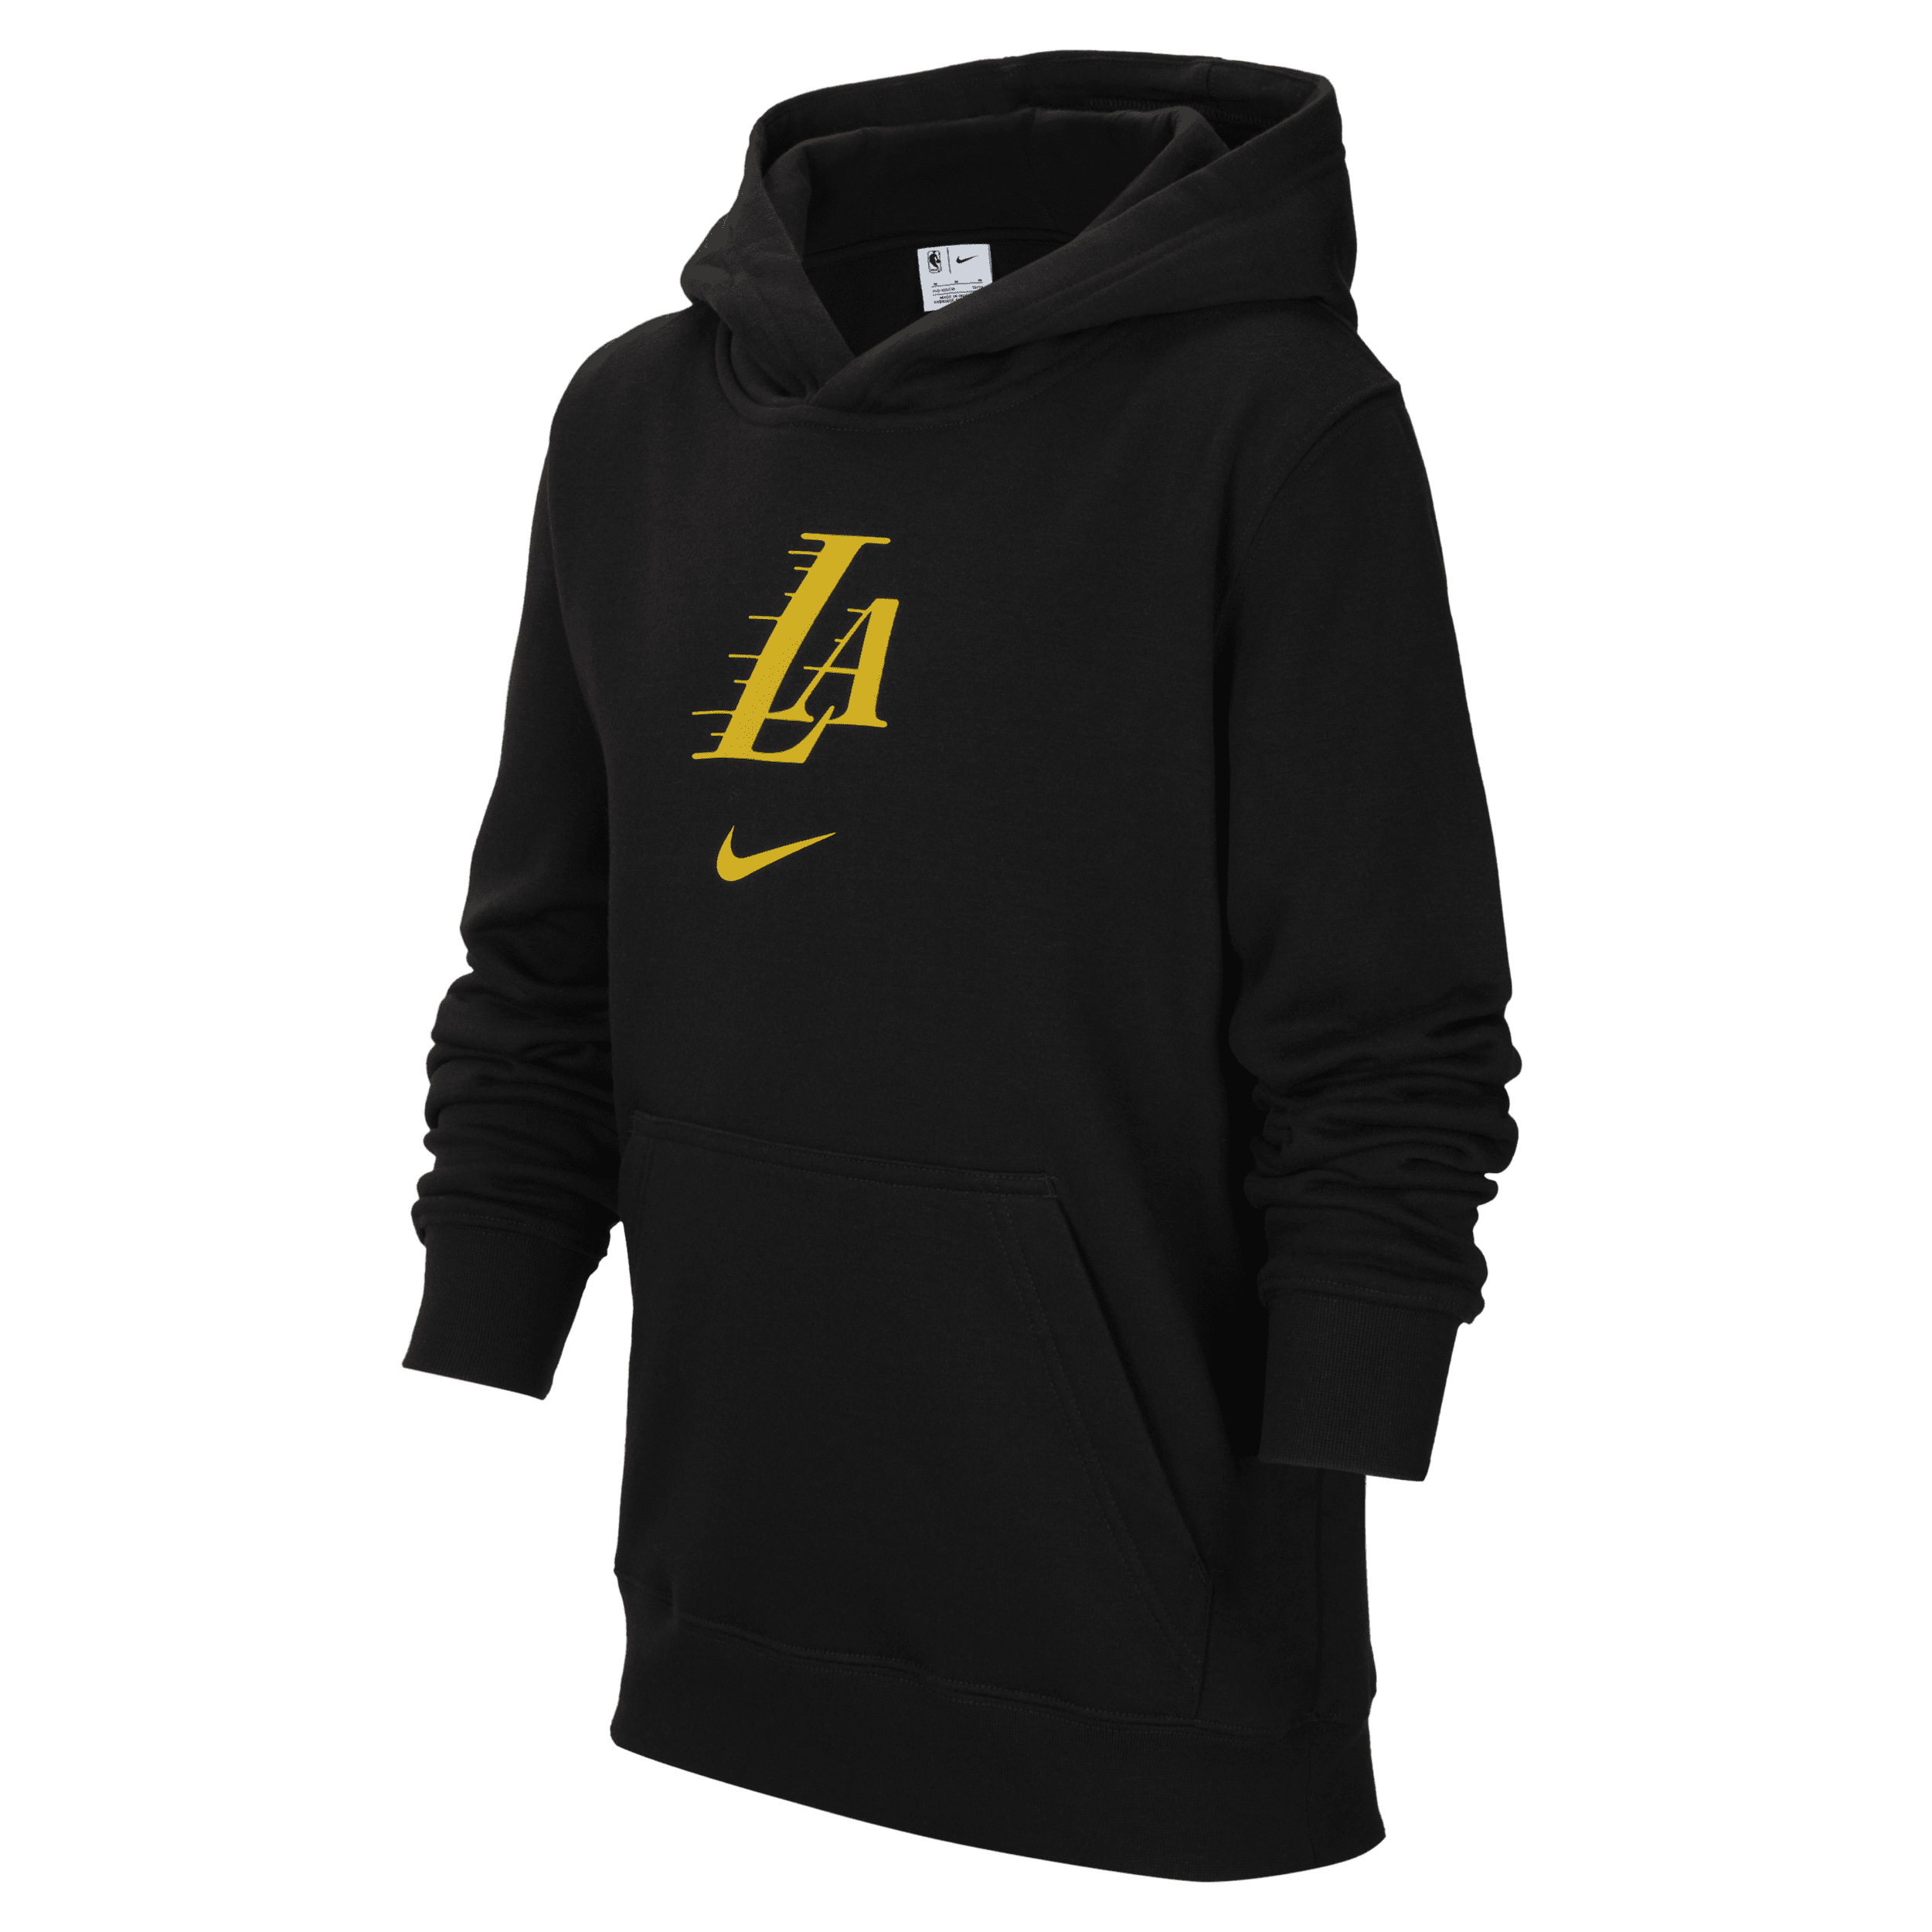 Felpa pullover con cappuccio Los Angeles Lakers Club City Edition Nike NBA – Bimbo/a piccolo/a - Nero